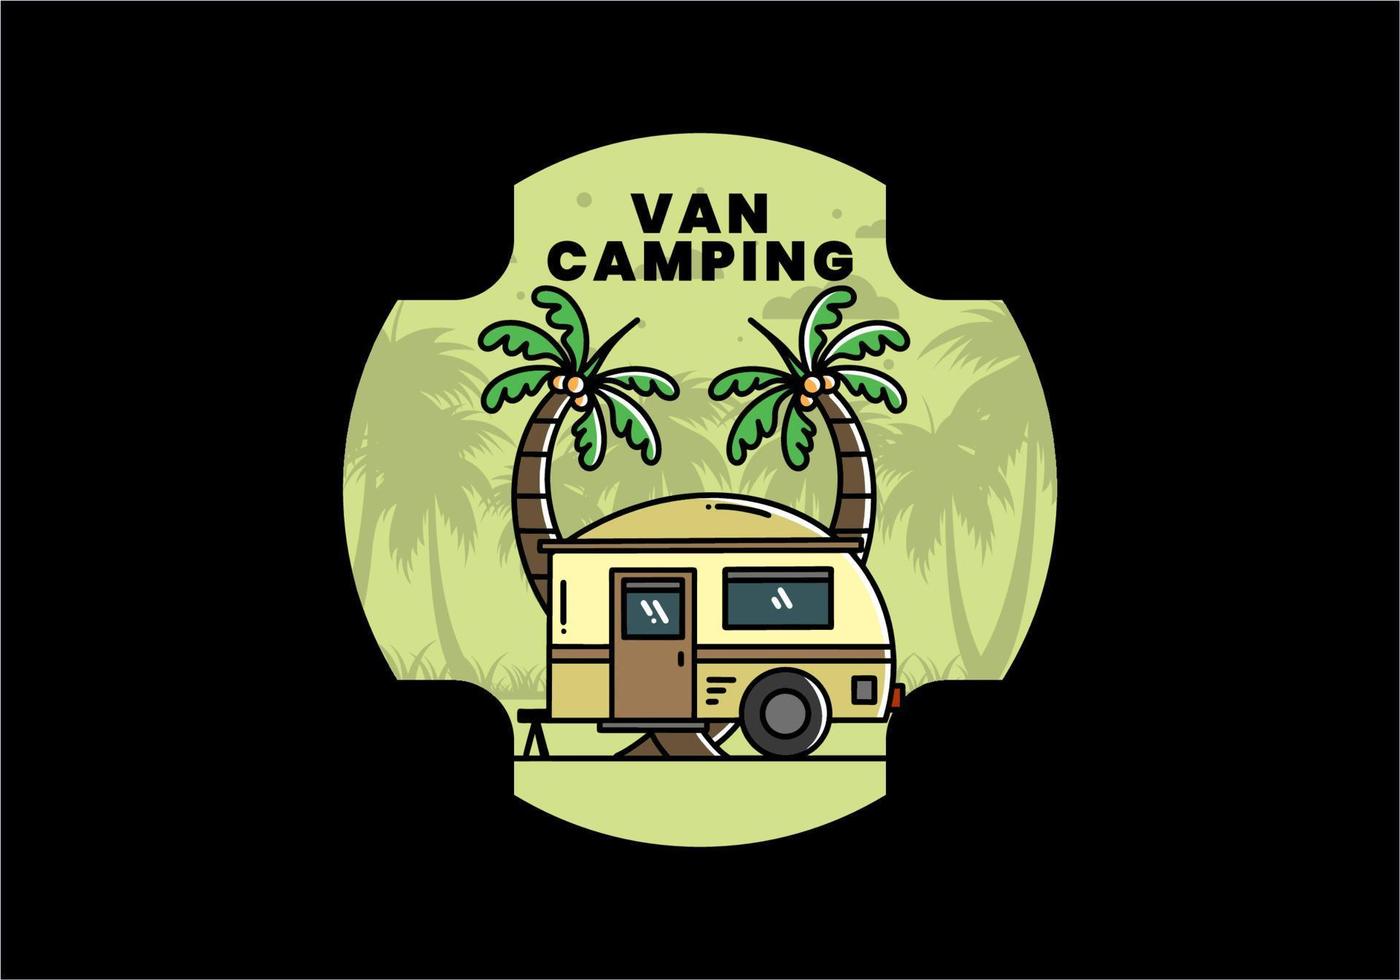 diseño de ilustración de árbol de coco y caravana en forma de lágrima vector